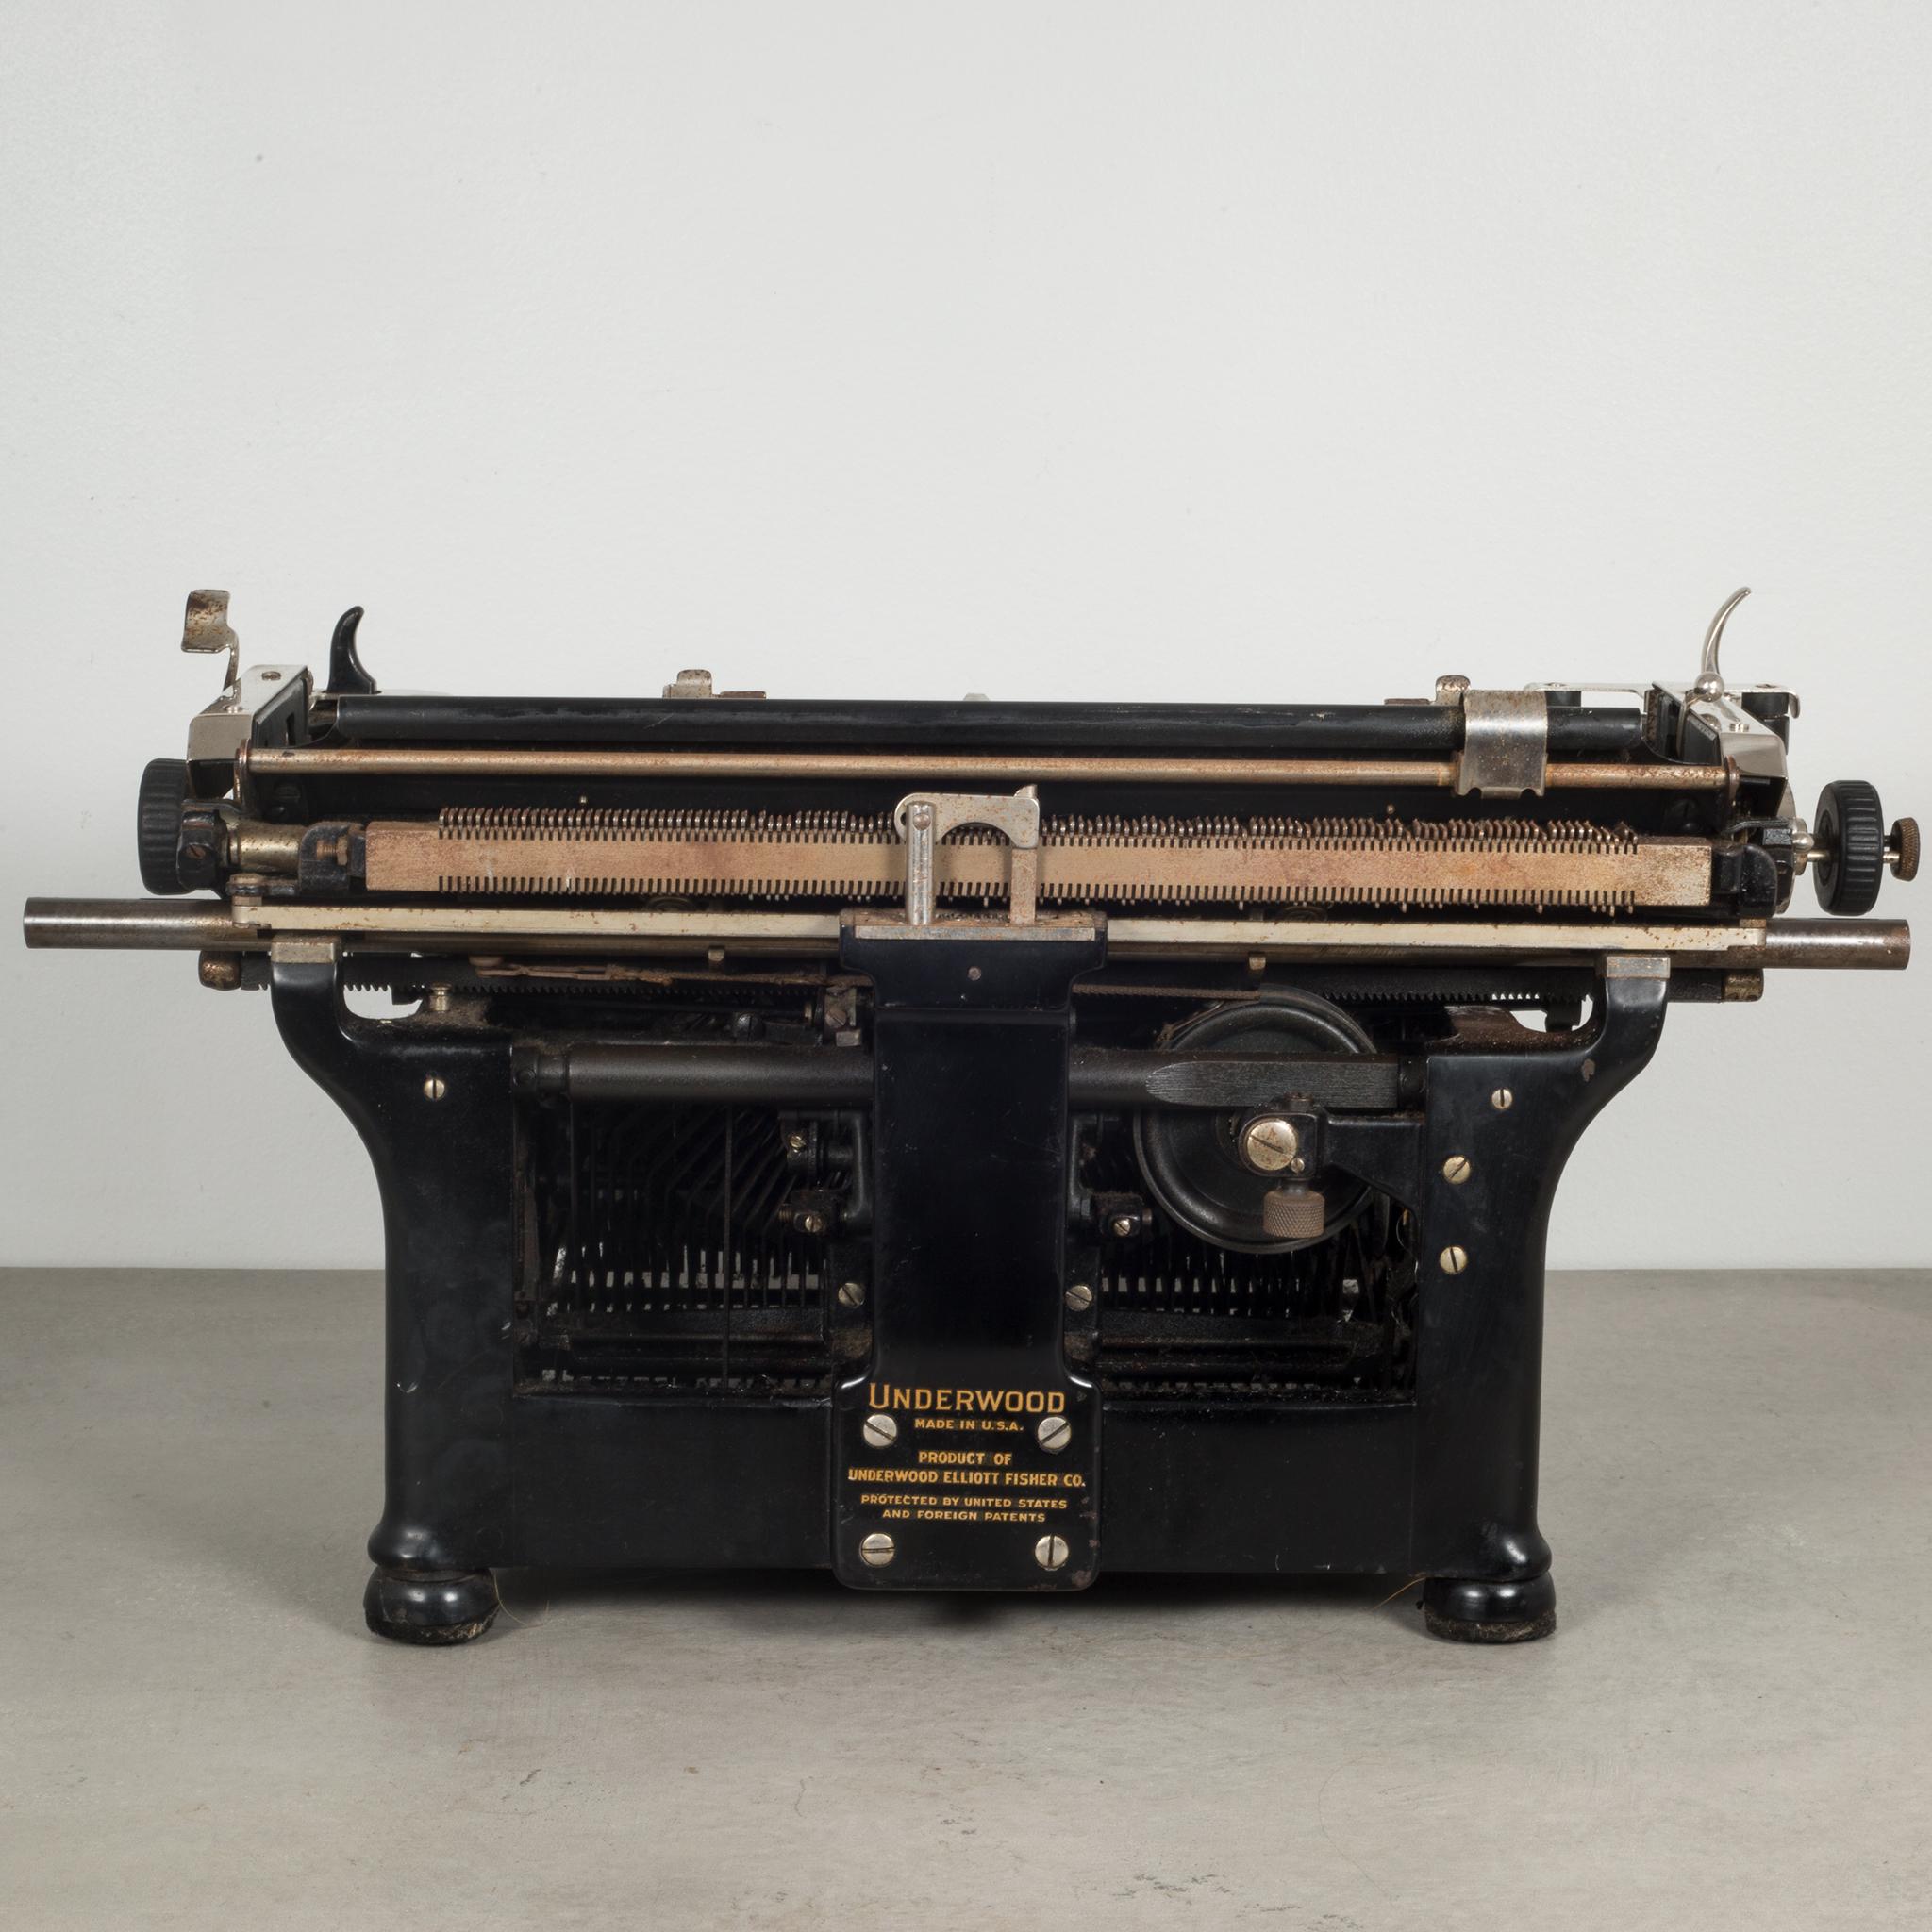 how much is an underwood typewriter worth